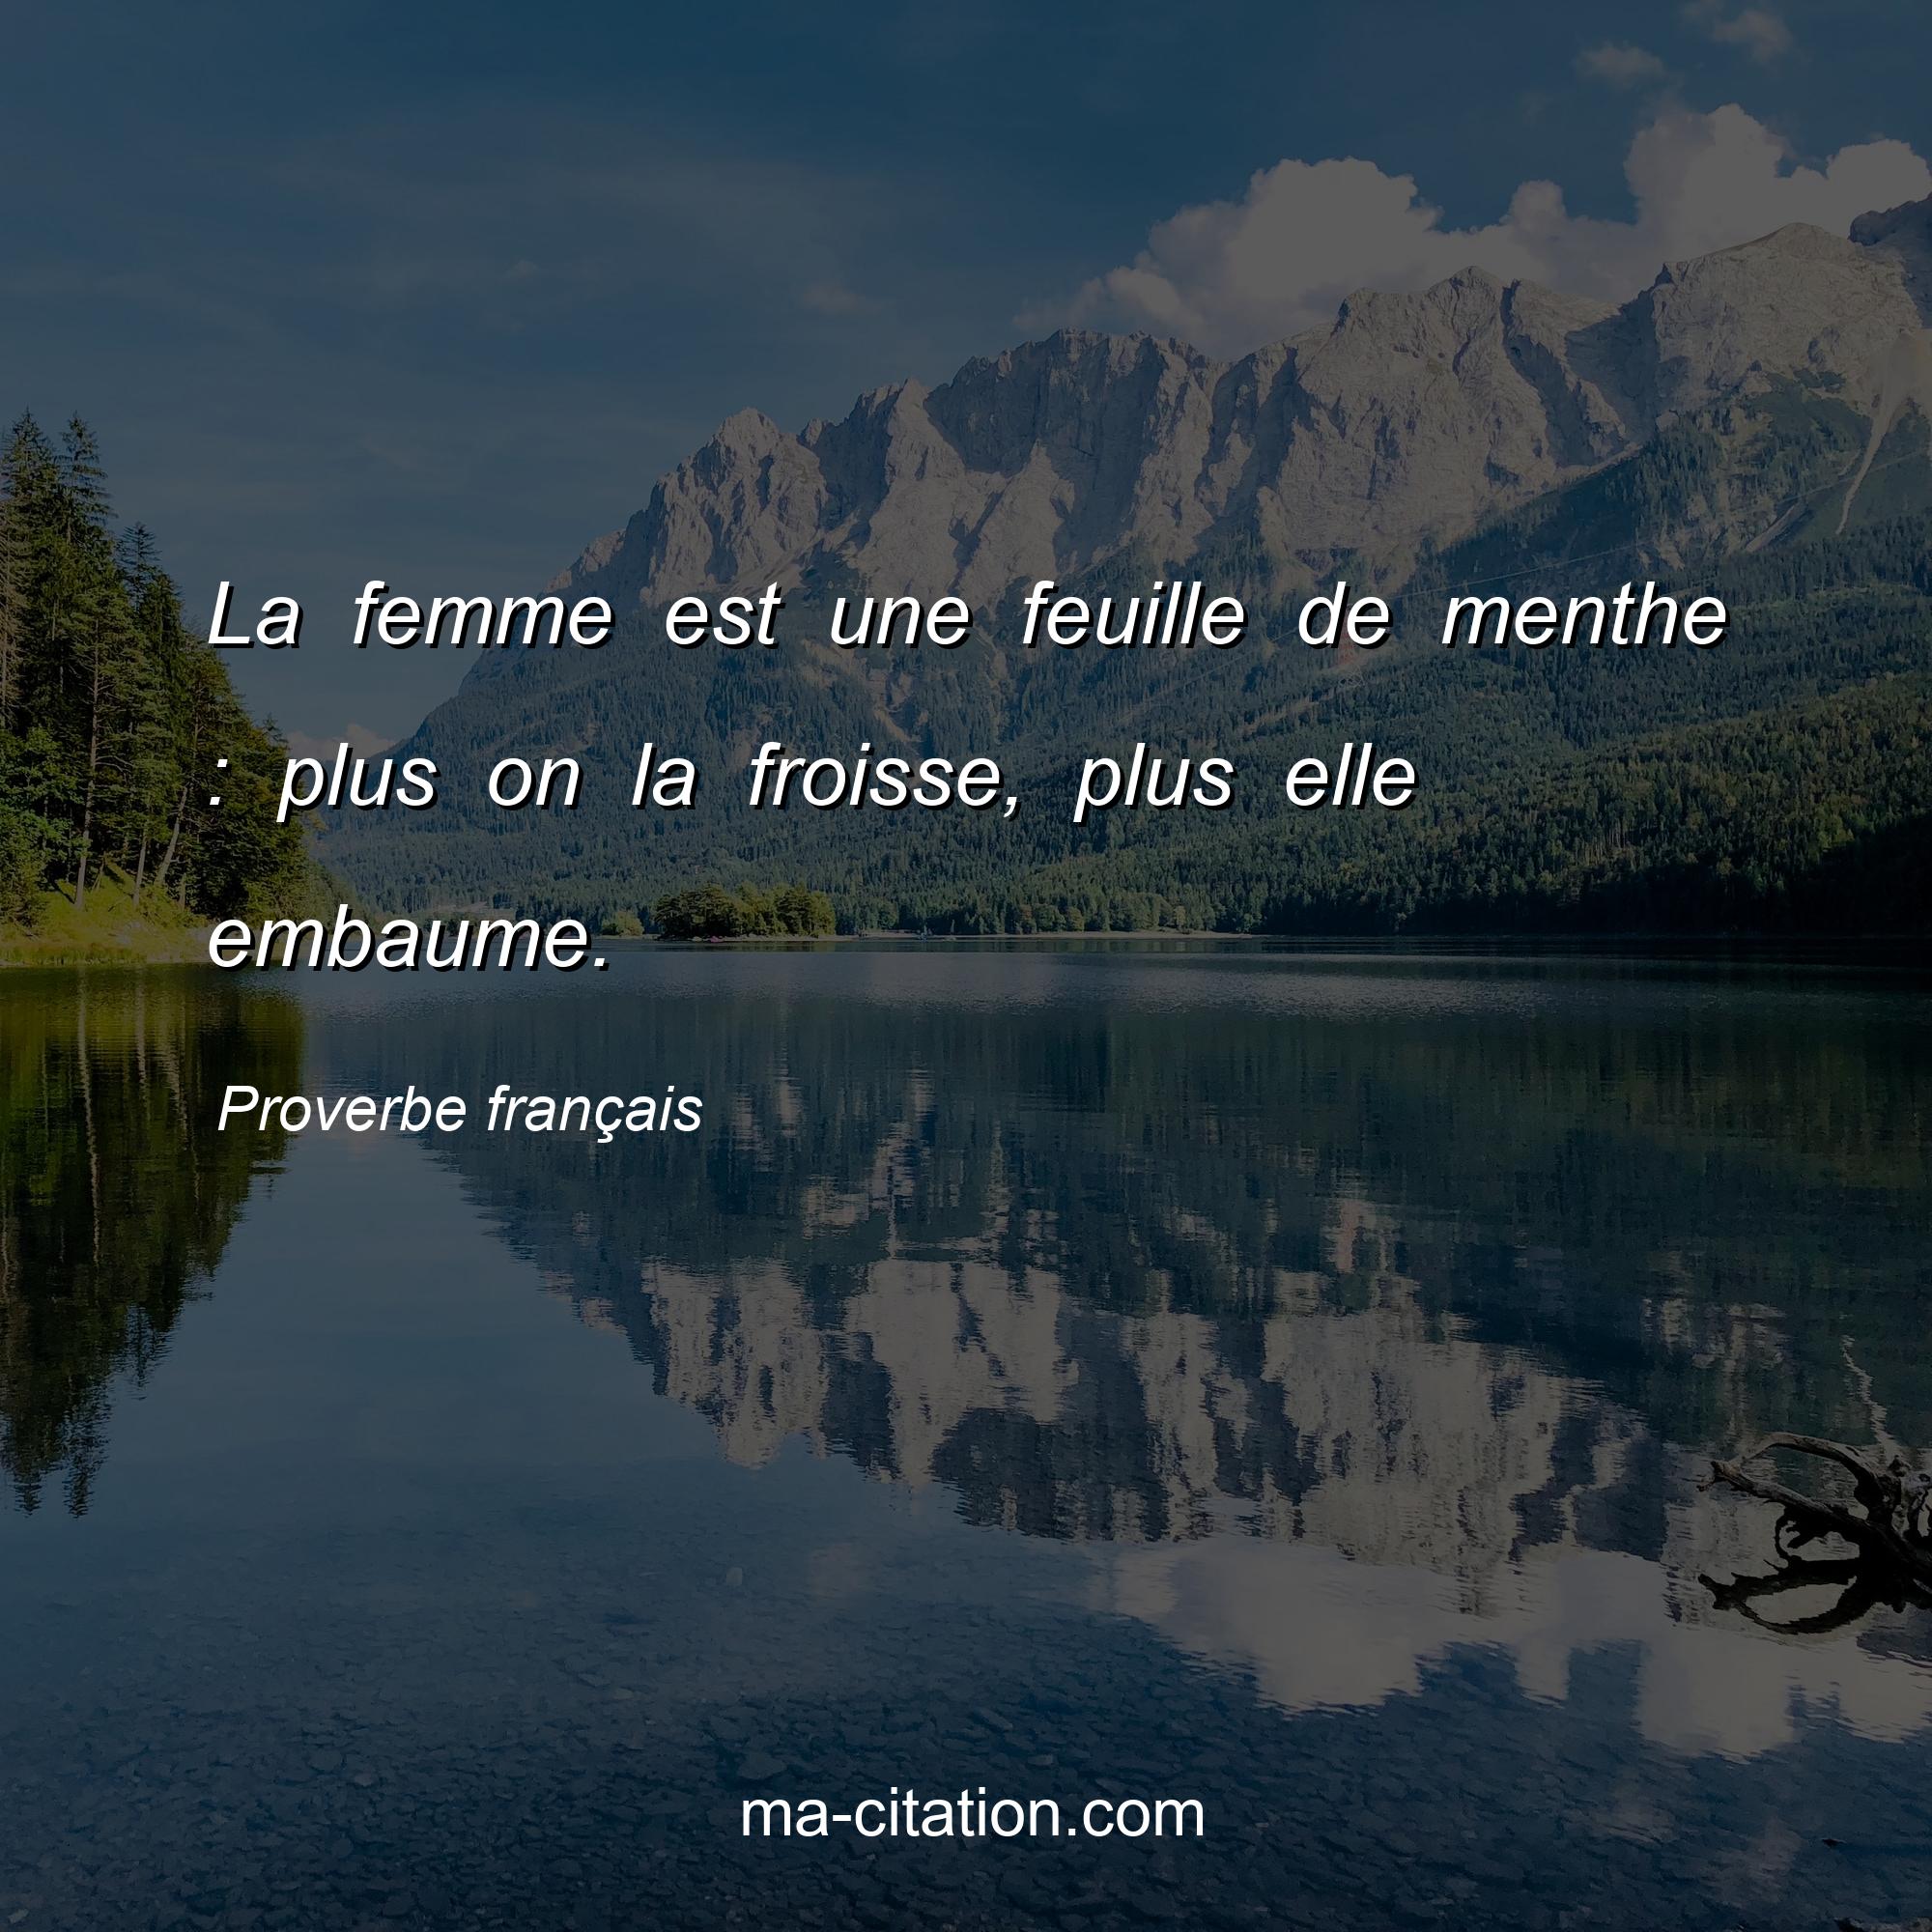 Proverbe français : La femme est une feuille de menthe : plus on la froisse, plus elle embaume.